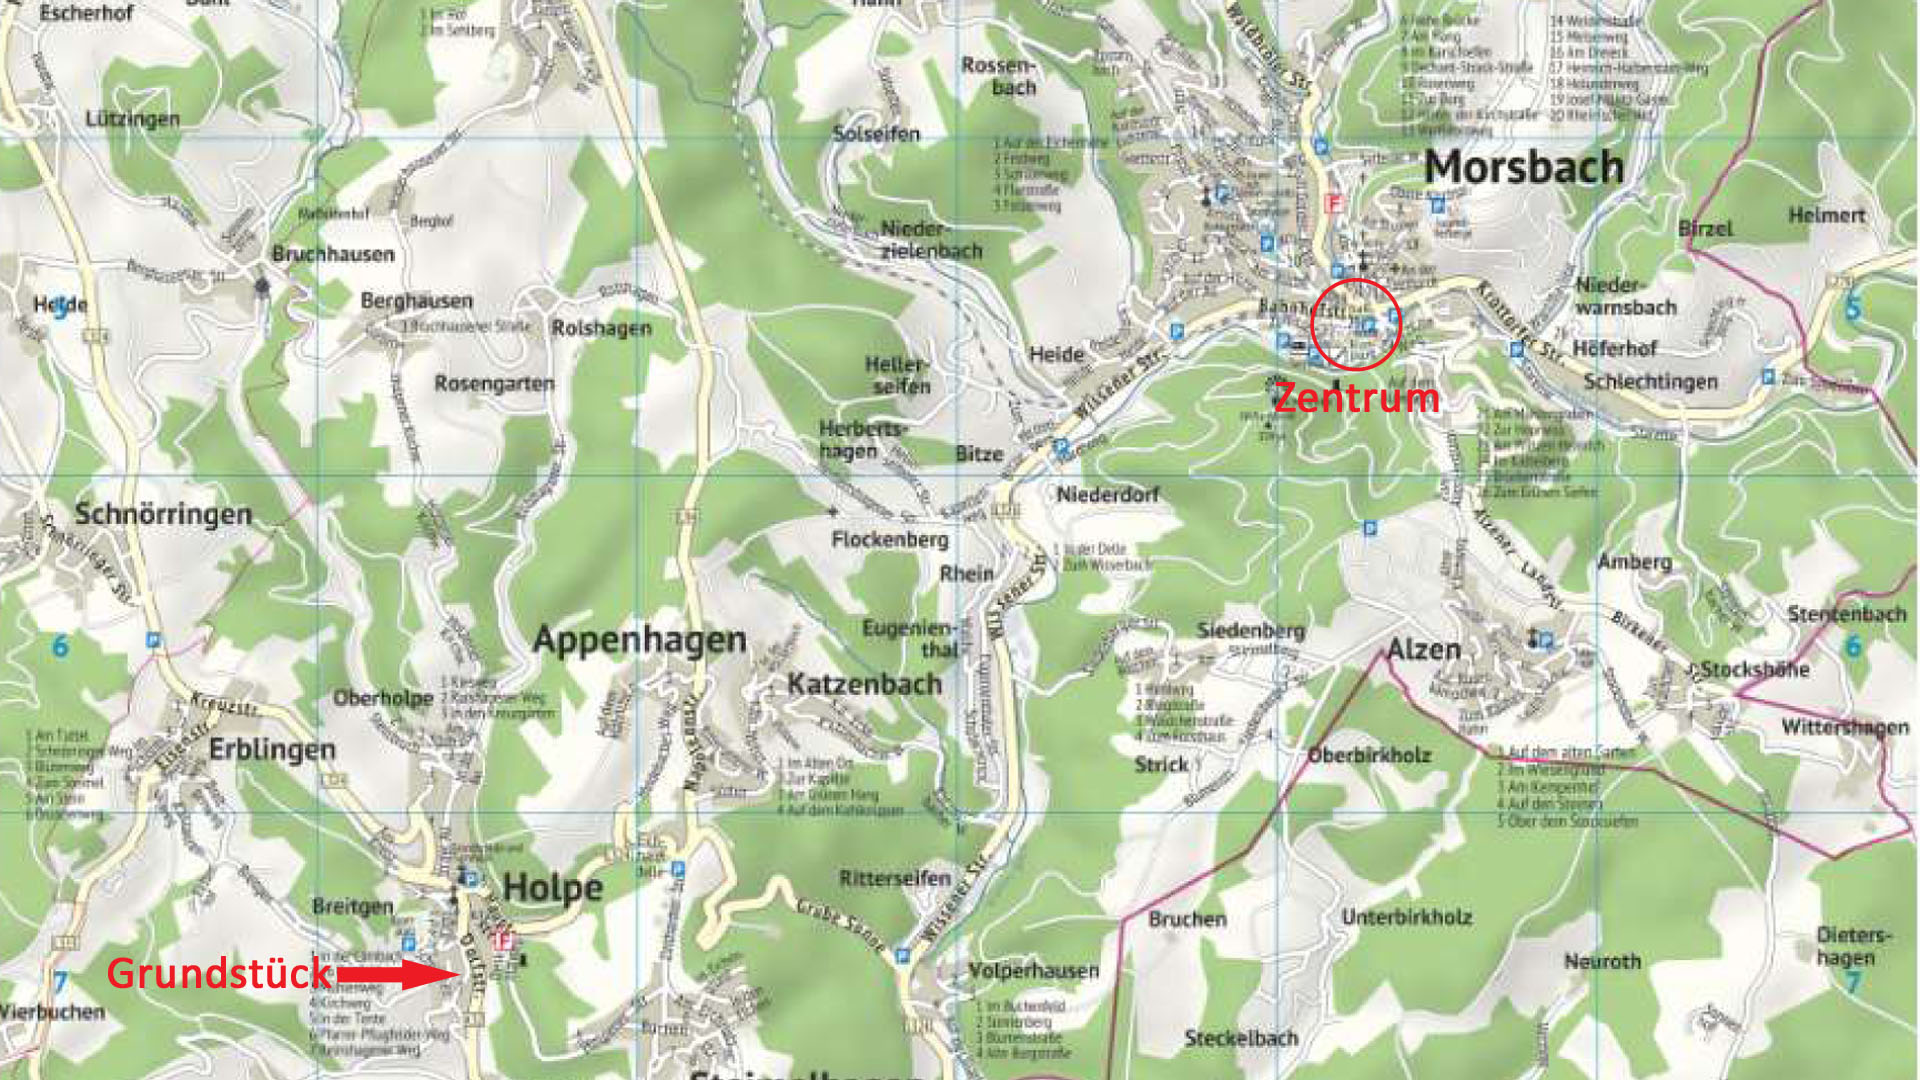 Morsbach-Holpe: Idealer Bauplatz für ein Haus mit mehreren Etagen, Ortskarte